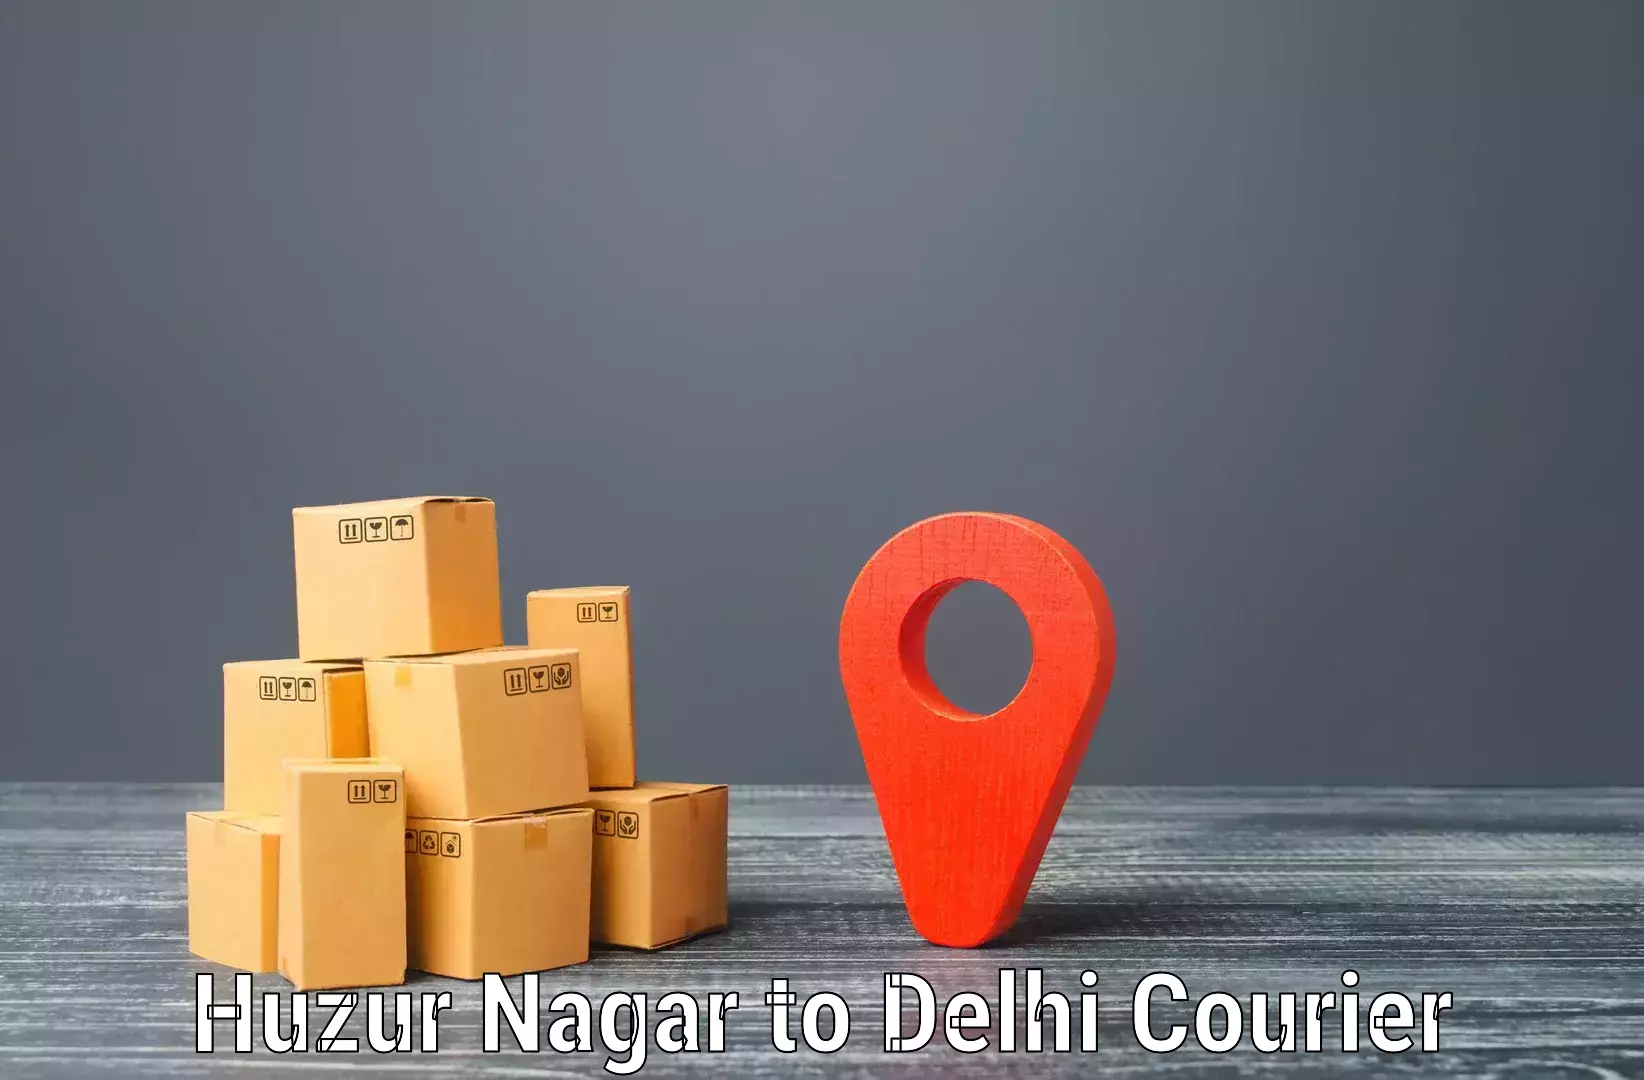 Express logistics service Huzur Nagar to NIT Delhi